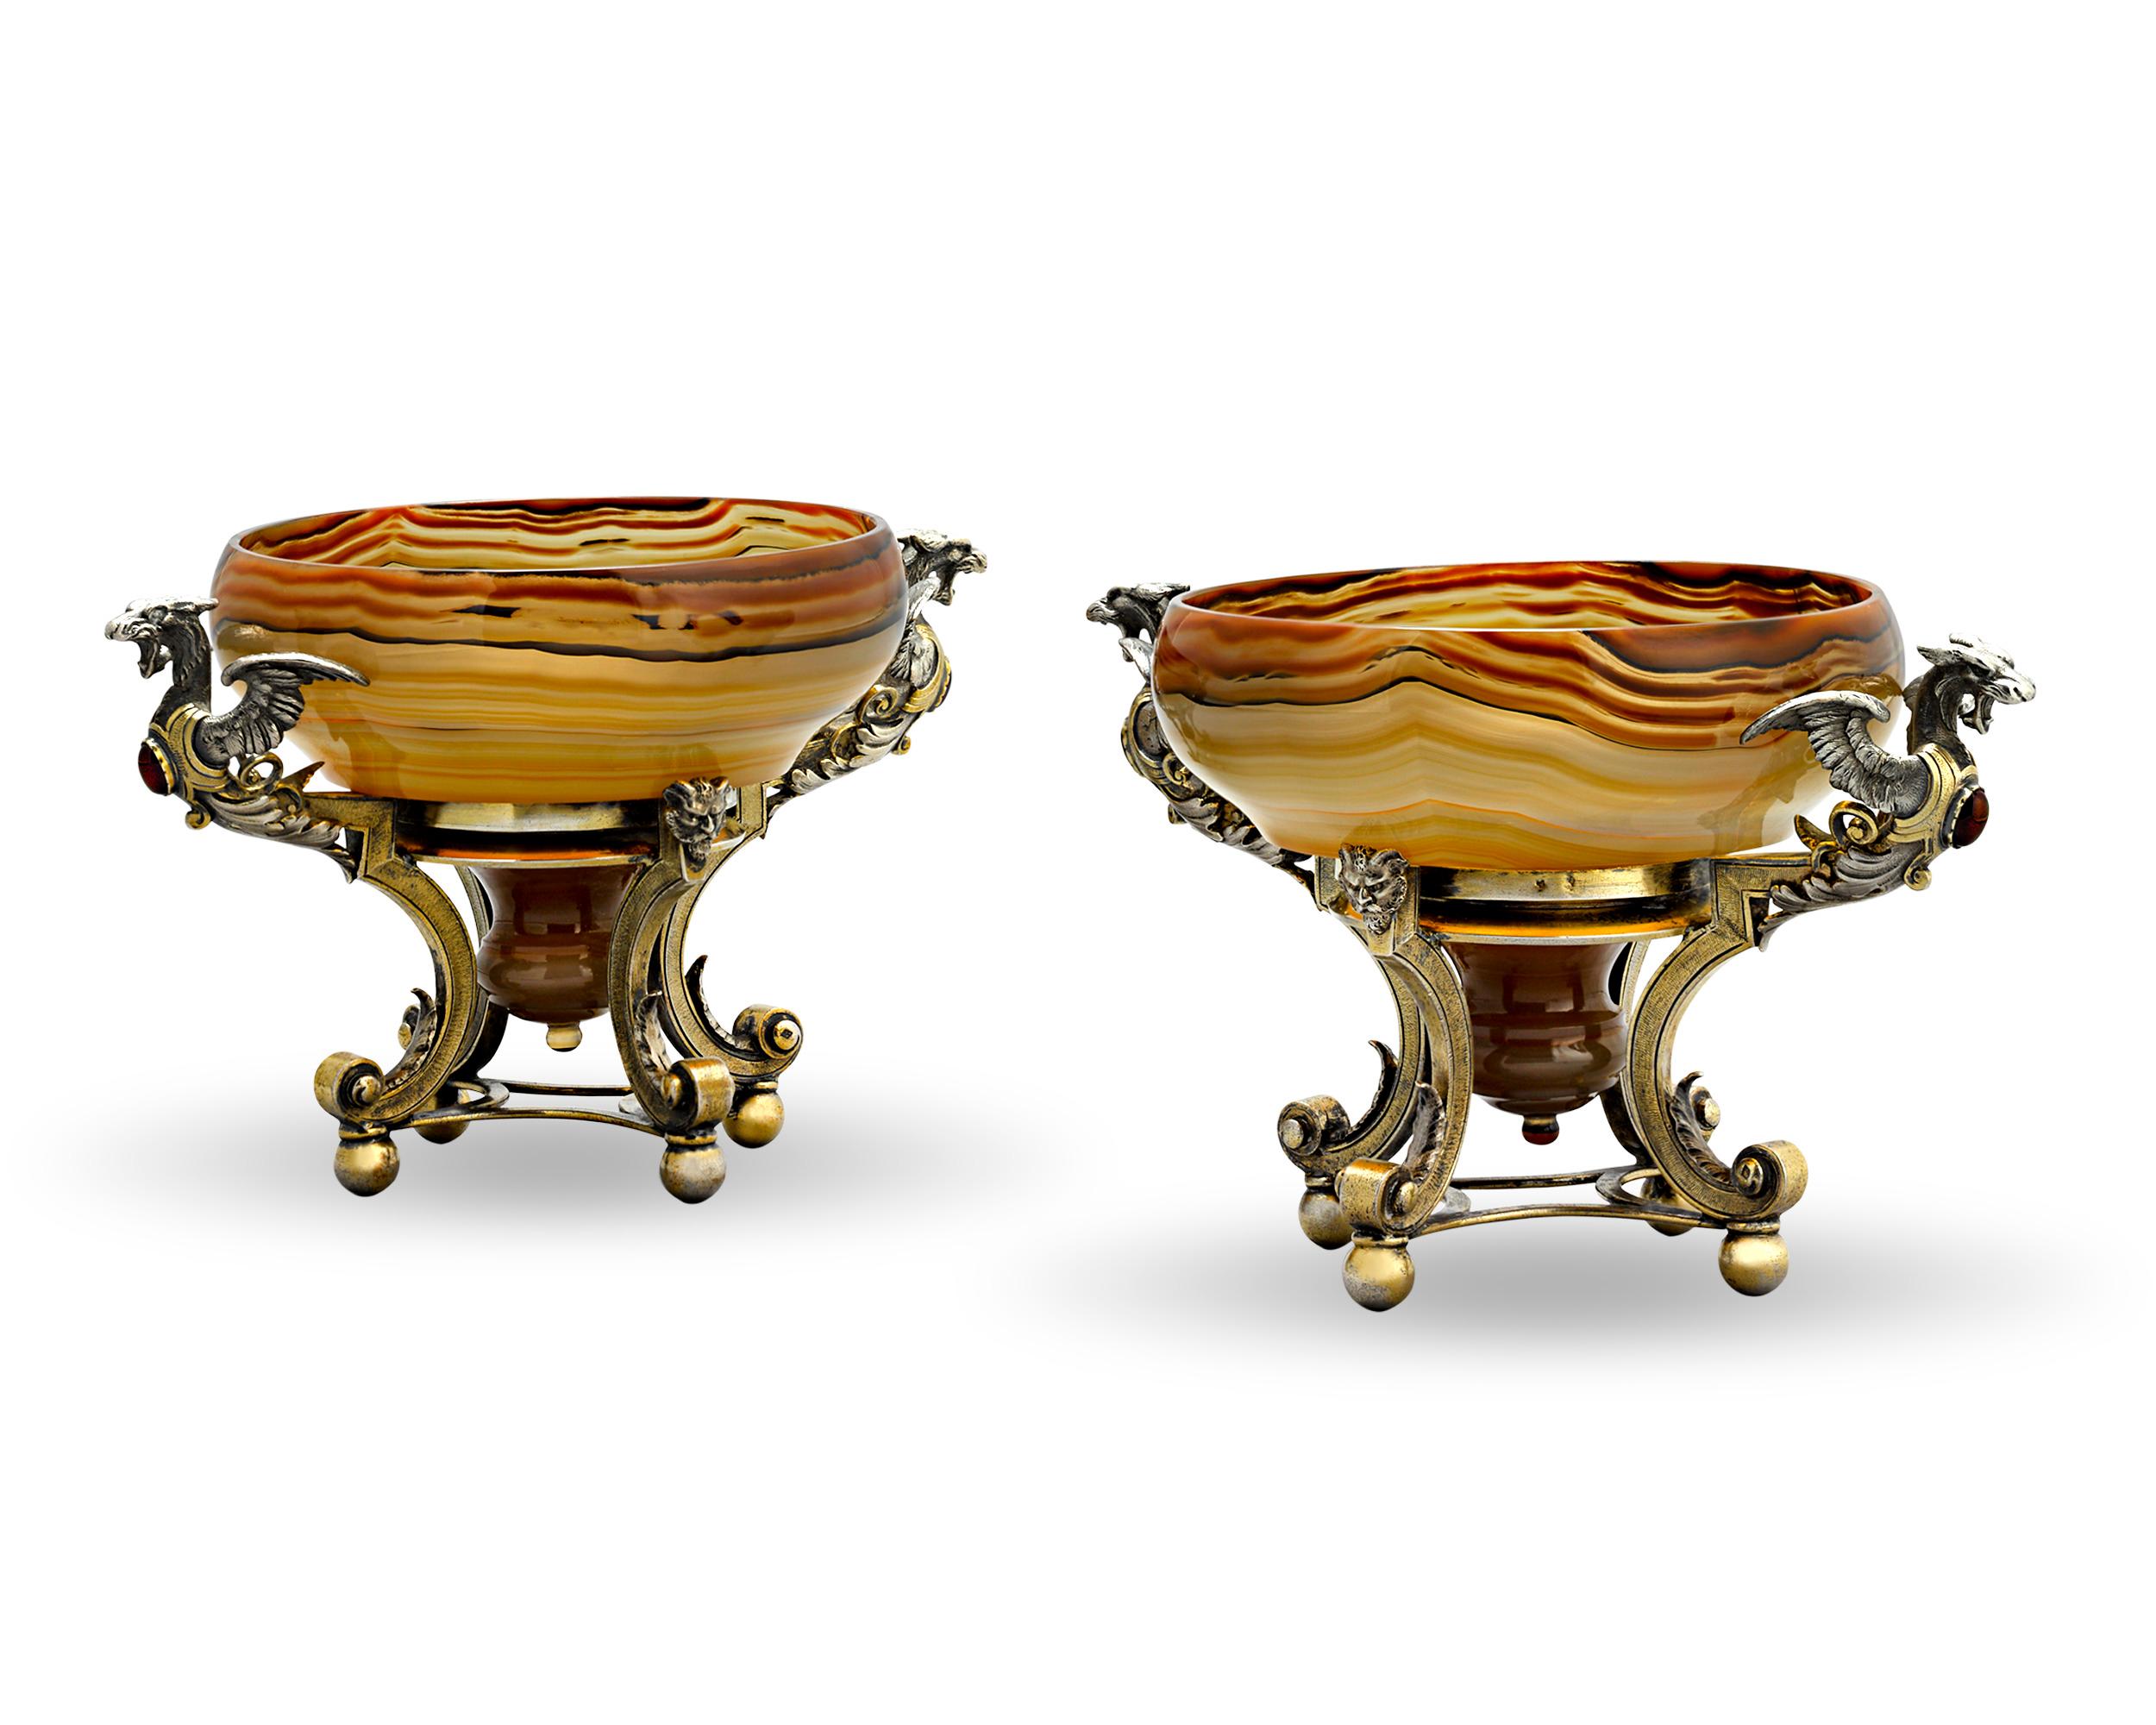 Dieses atemberaubende Paar Tazzas aus Silber und Achat des bekannten Pariser Goldschmieds und Juweliers Jules Wiese besticht durch seine klassische Eleganz. Die warme Schönheit des gebänderten Achats wird perfekt ergänzt durch die erhabenen